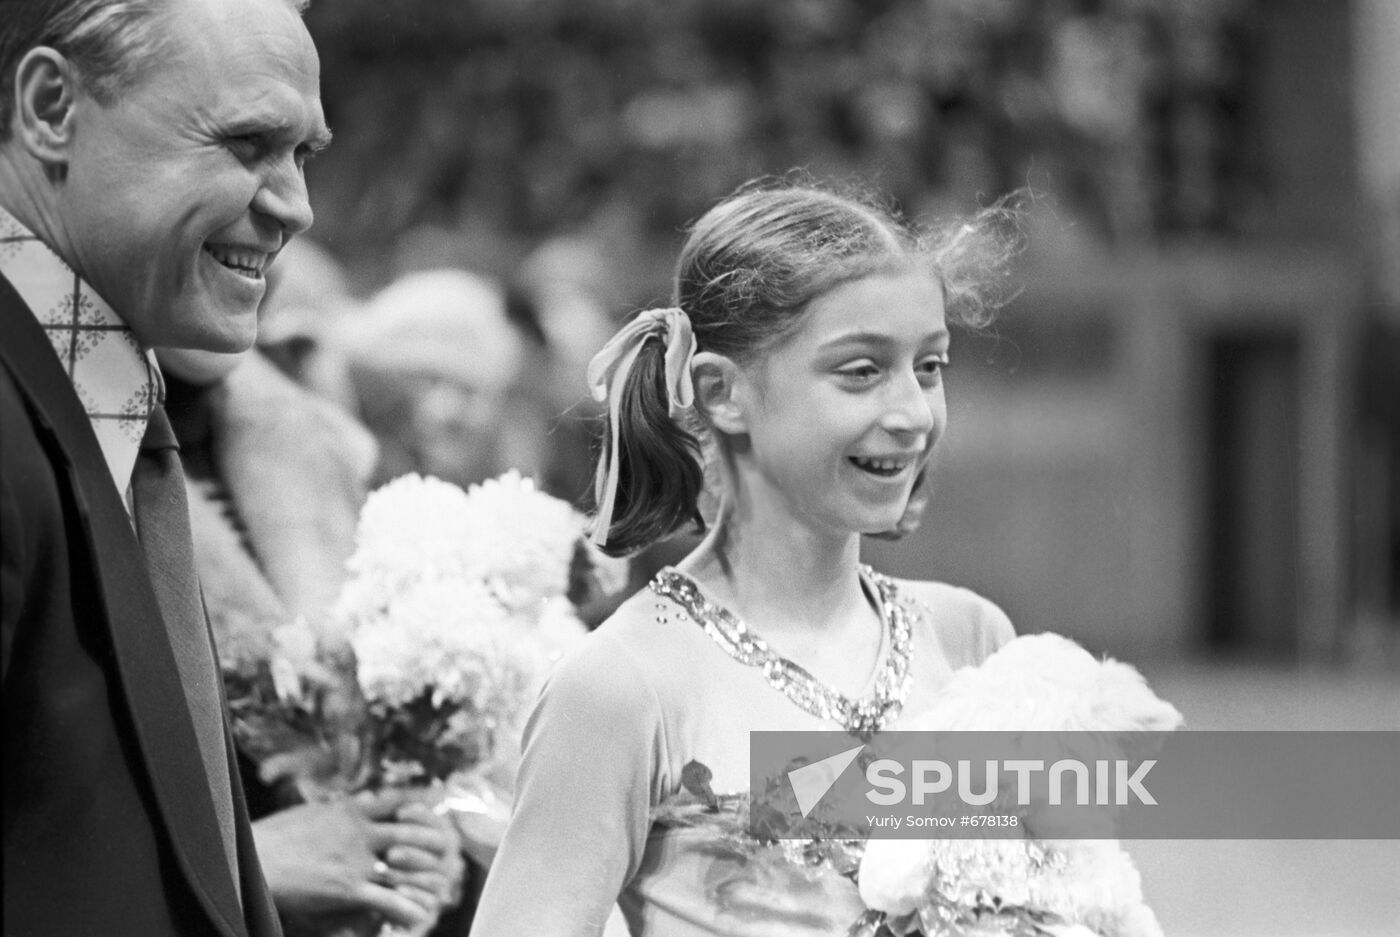 Figure skater Yelena Vodorezova and coach Stanislav Zhuk